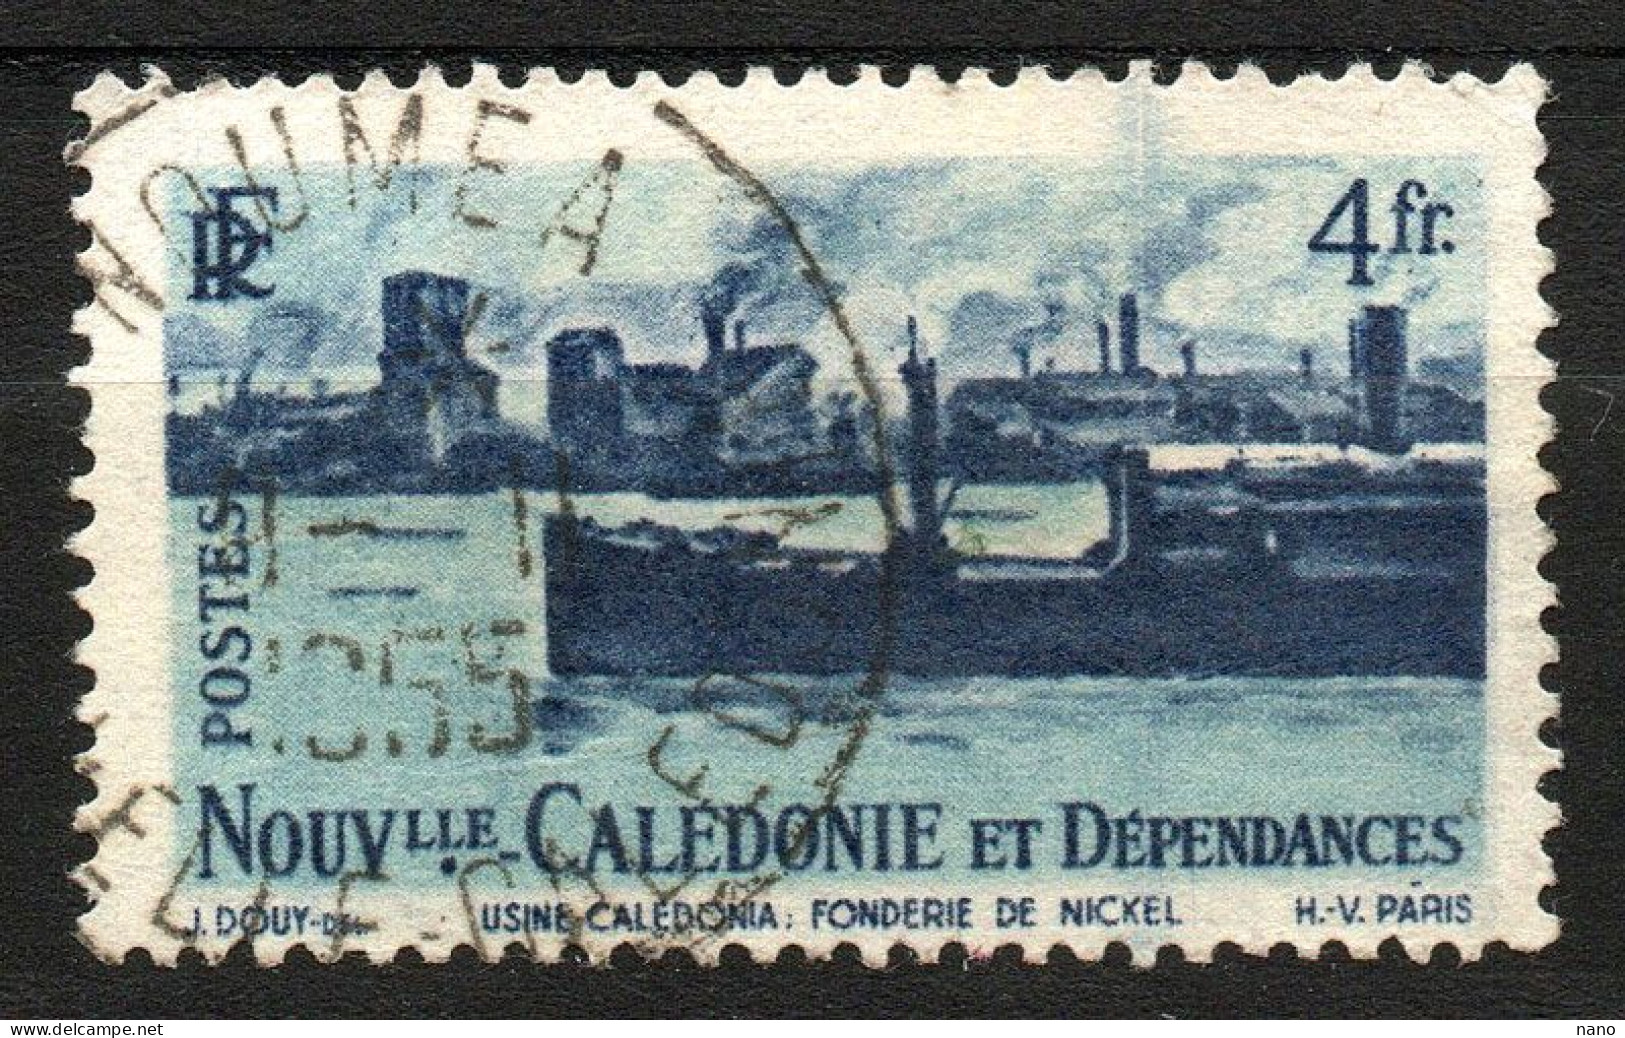 NOUVELLE-CALEDONIE - Y&T N° 271 - 4 Fr. Fonderie De Nickel - Année 1948 - Oblitérés